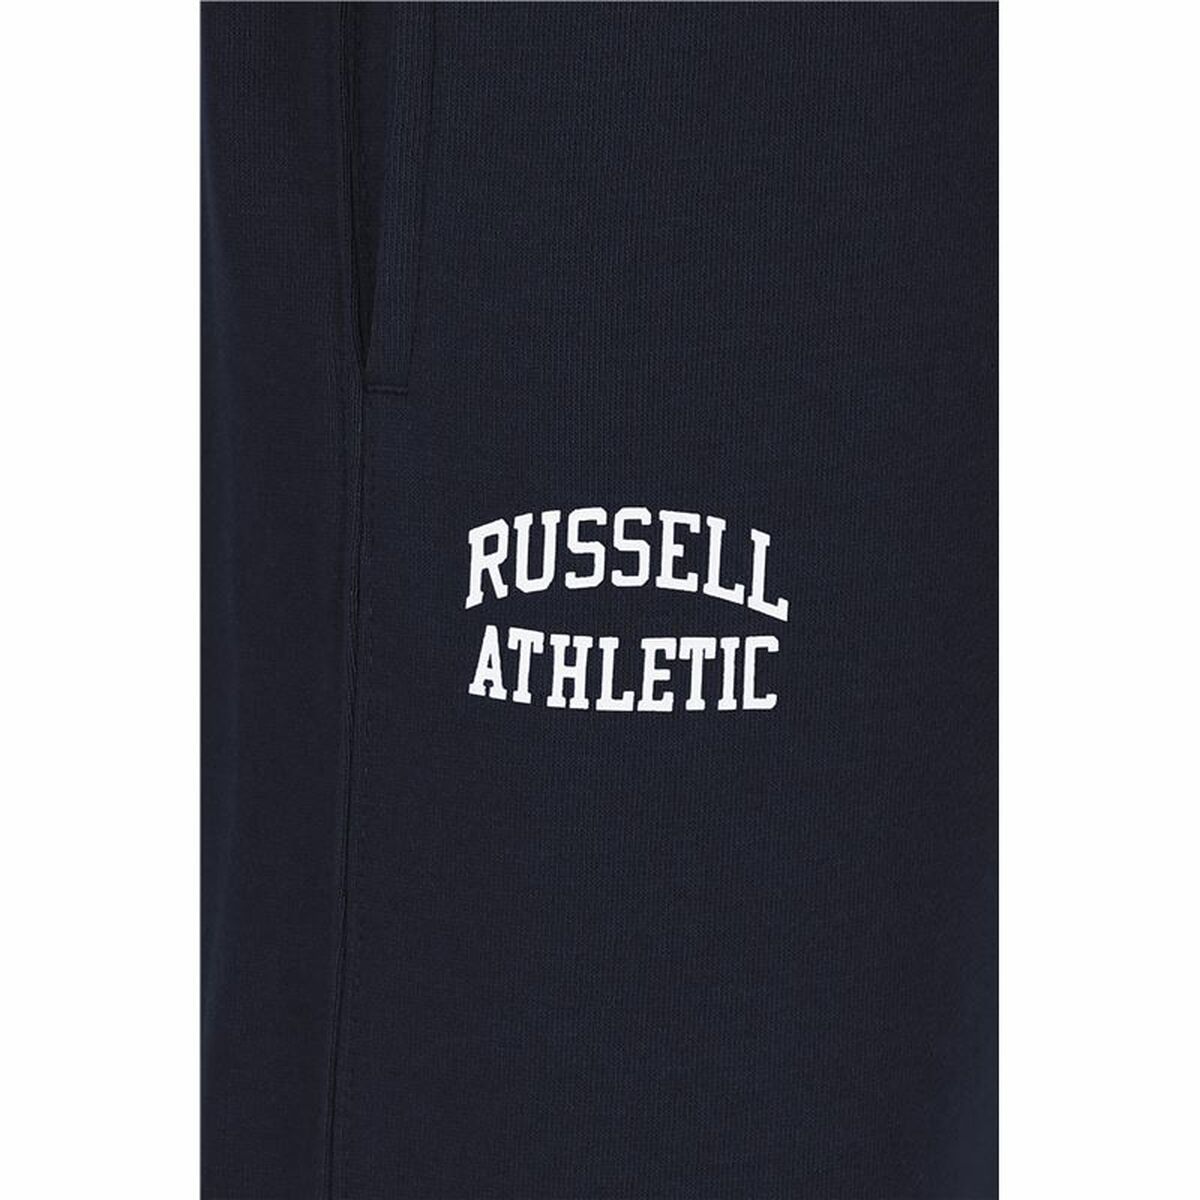 Kaufe Hose für Erwachsene Russell Athletic Iconic Blau Herren bei AWK Flagship um € 52.00